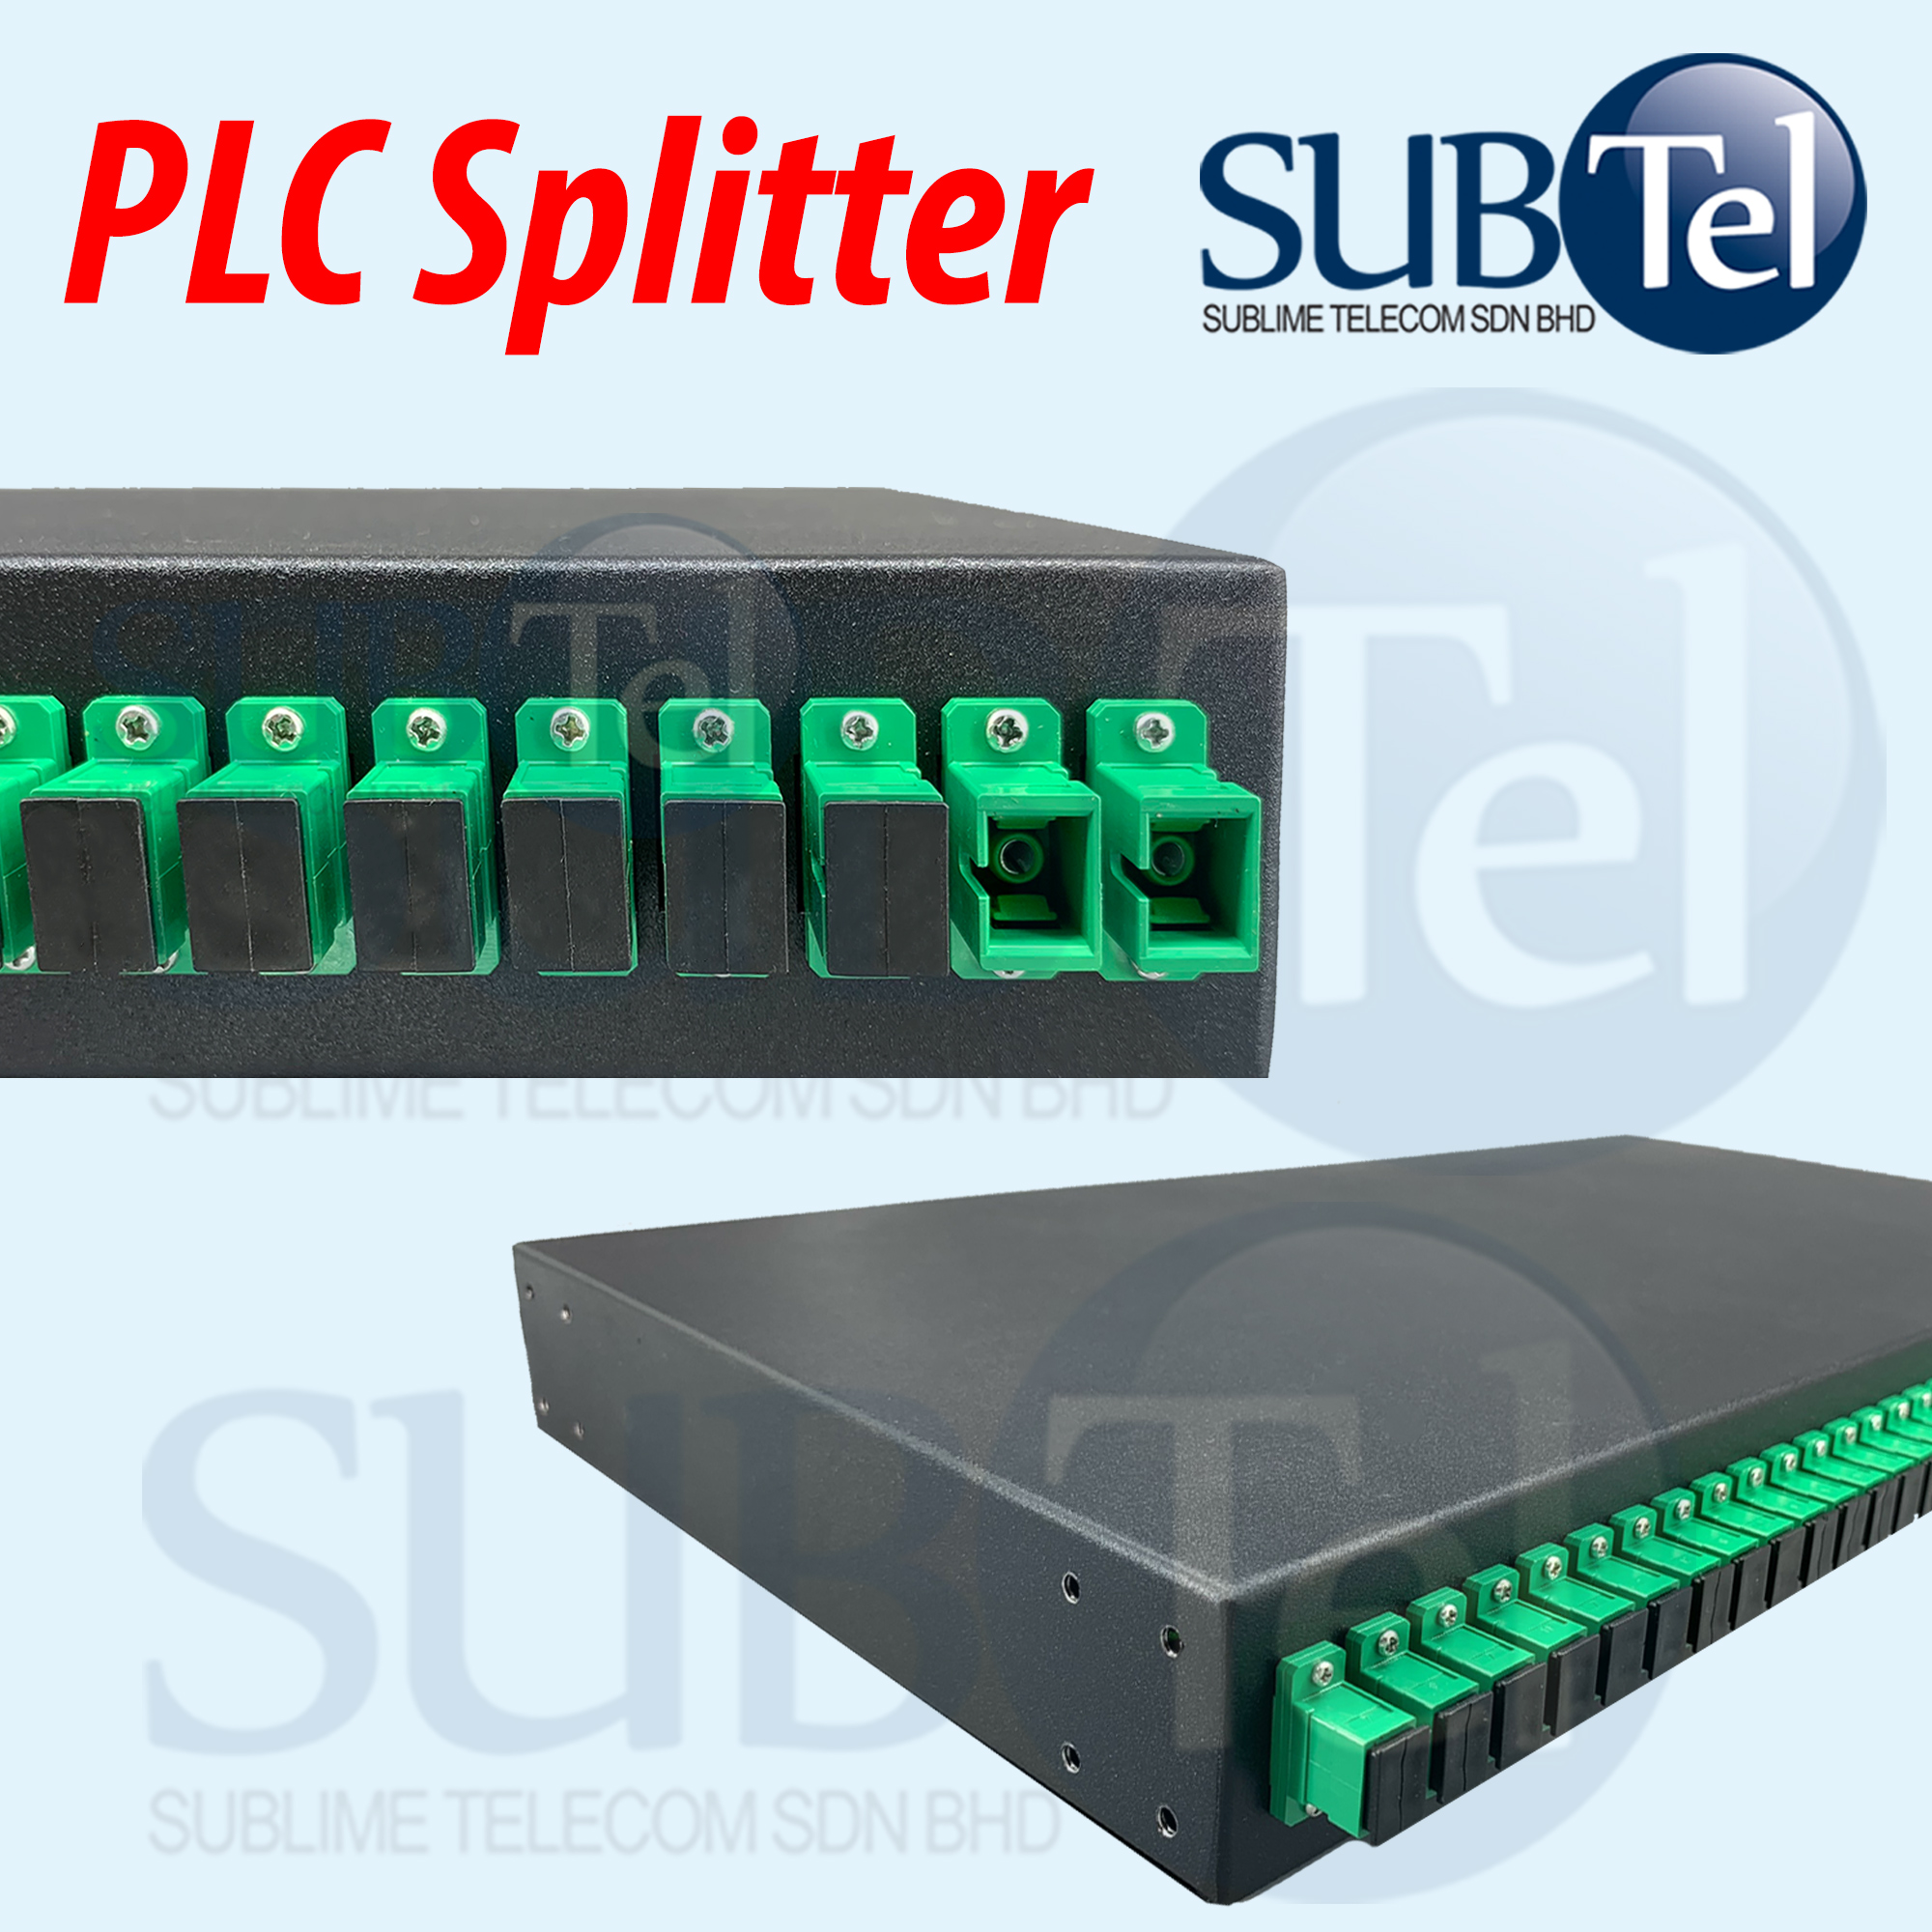 SUBTel PLC Splitter 2x32 or 2x64 SC/APC Fiber Optical FTTH 19 ' 1U 2U